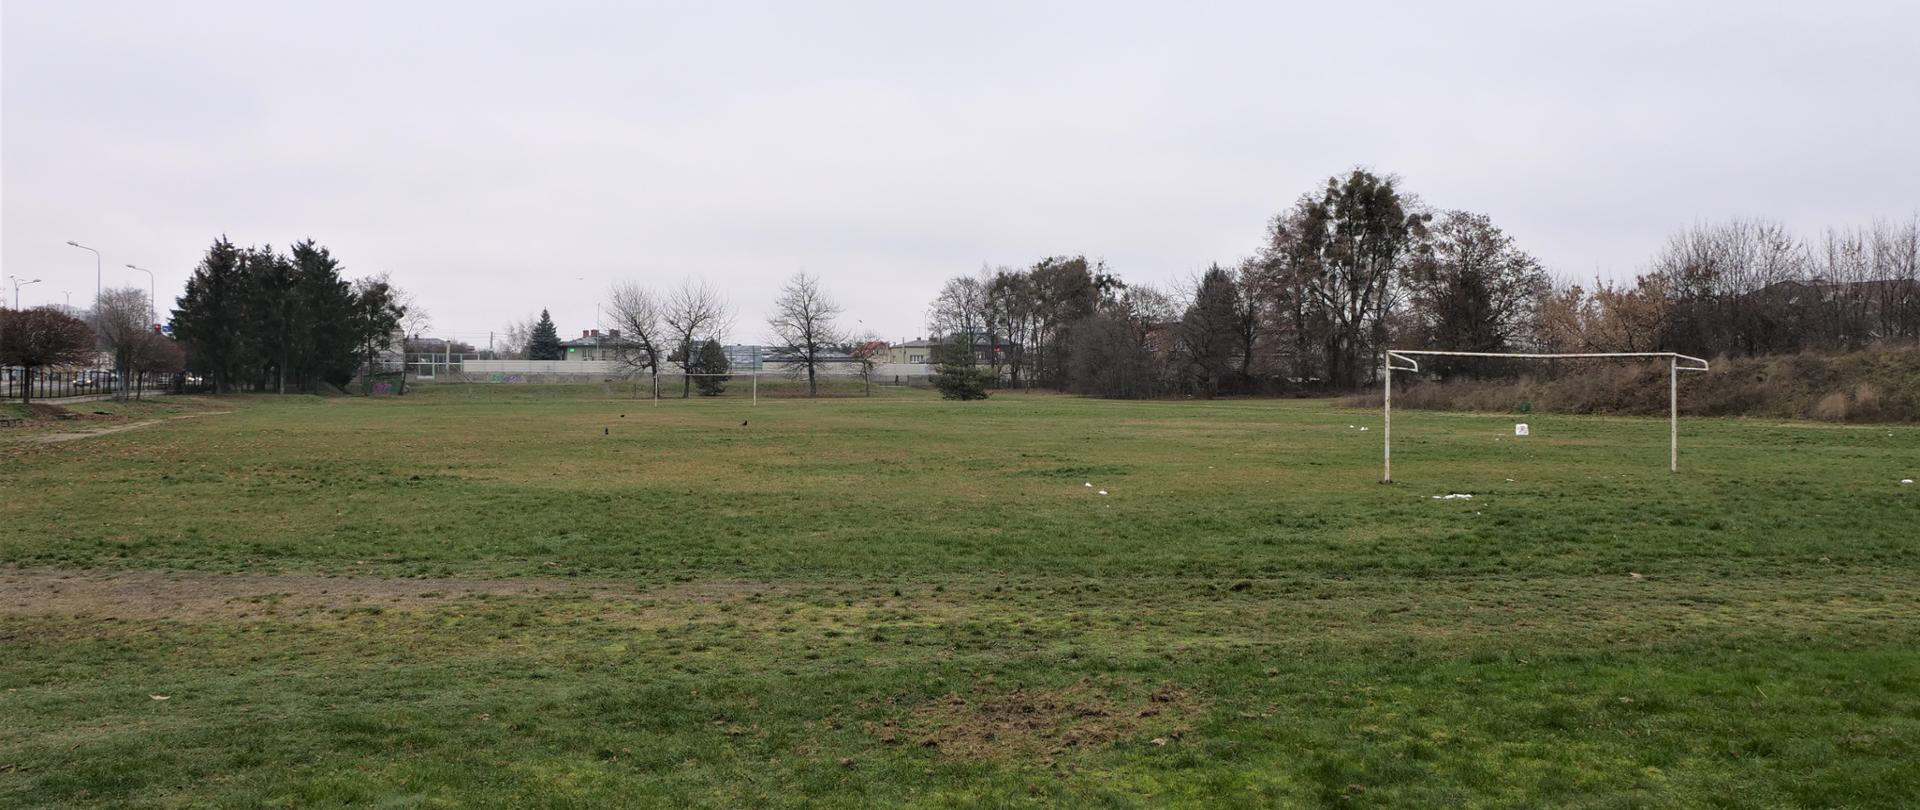 Zdjęcie przedstawia trawiaste boisko z bramkami